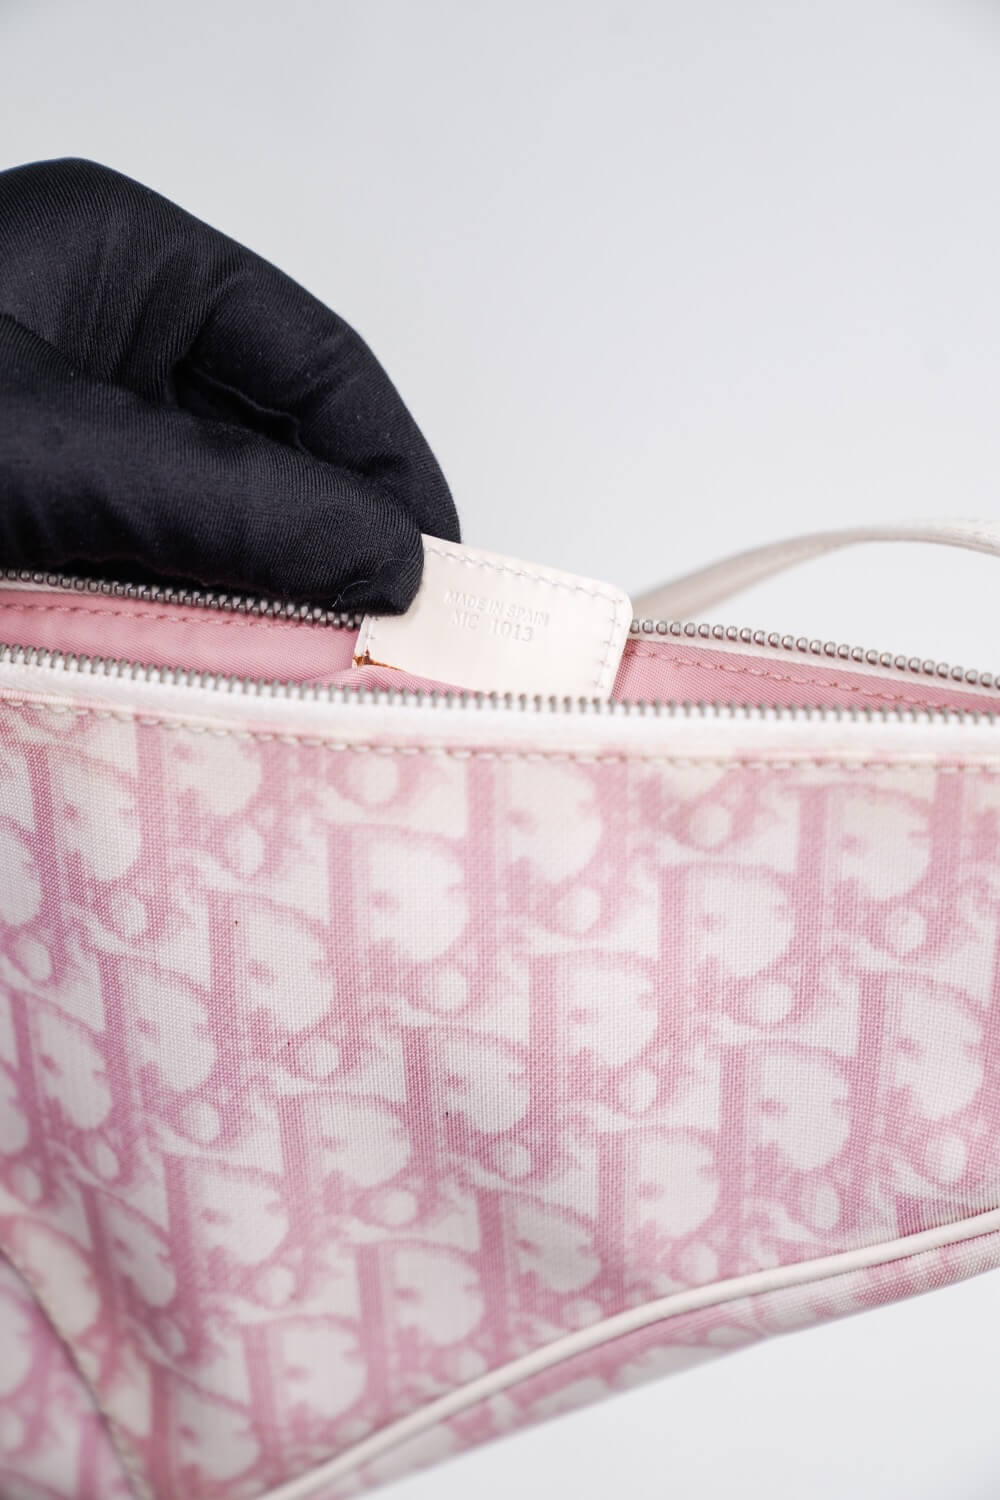 Christian Dior Vintage Girly Saddle Bag - Pink Shoulder Bags